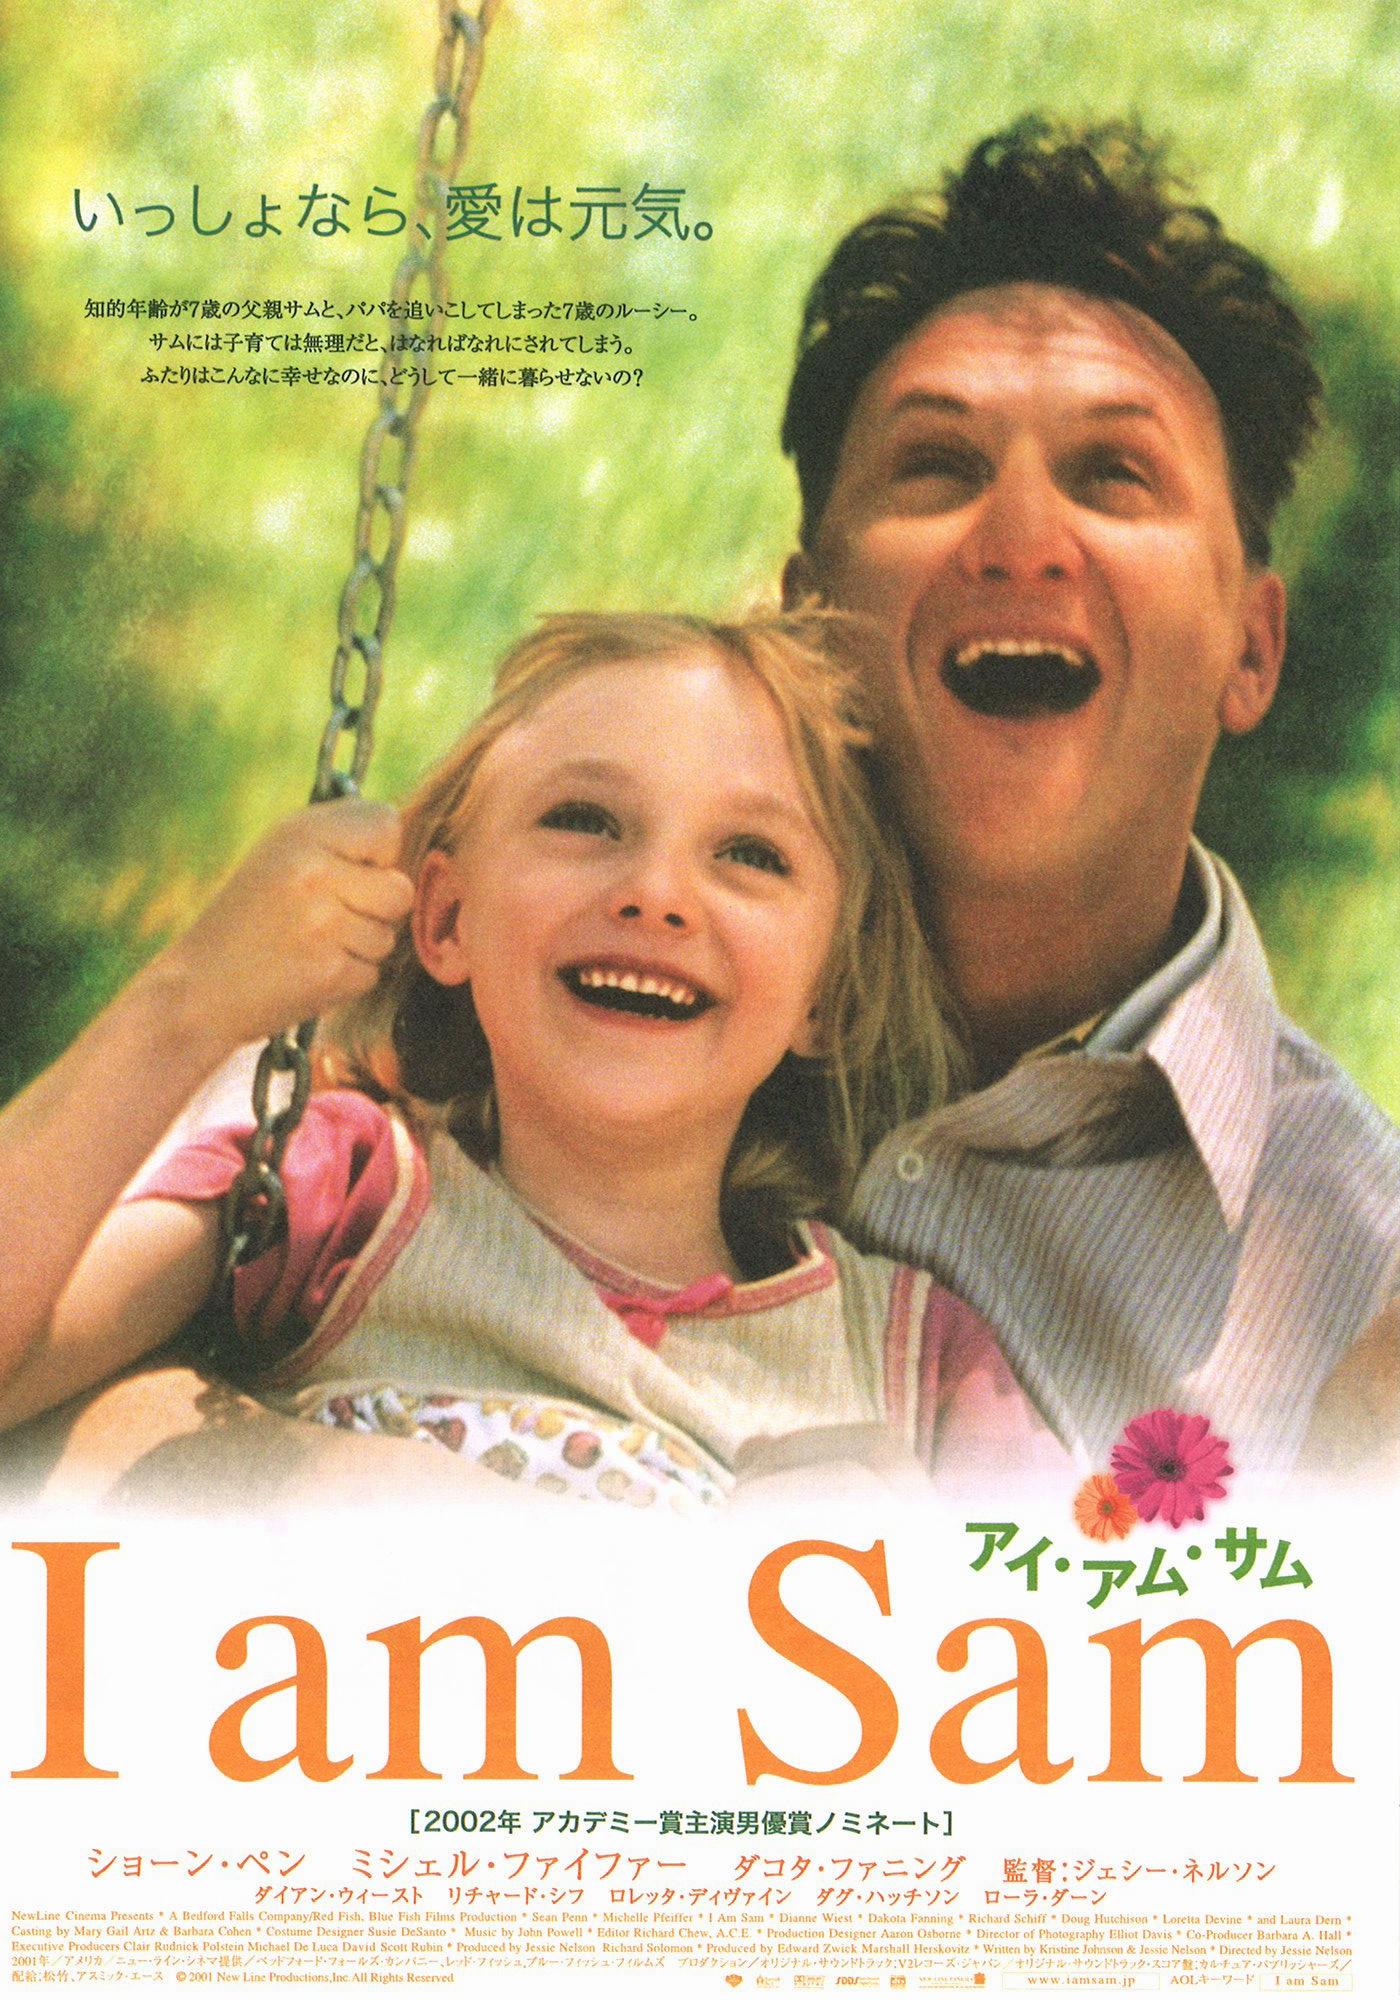 Постер сам. Я Сэм 2001. Я – Сэм (2001 год, США). Шон Пенн я Сэм. Шон Пенн и Дакота Фаннинг.